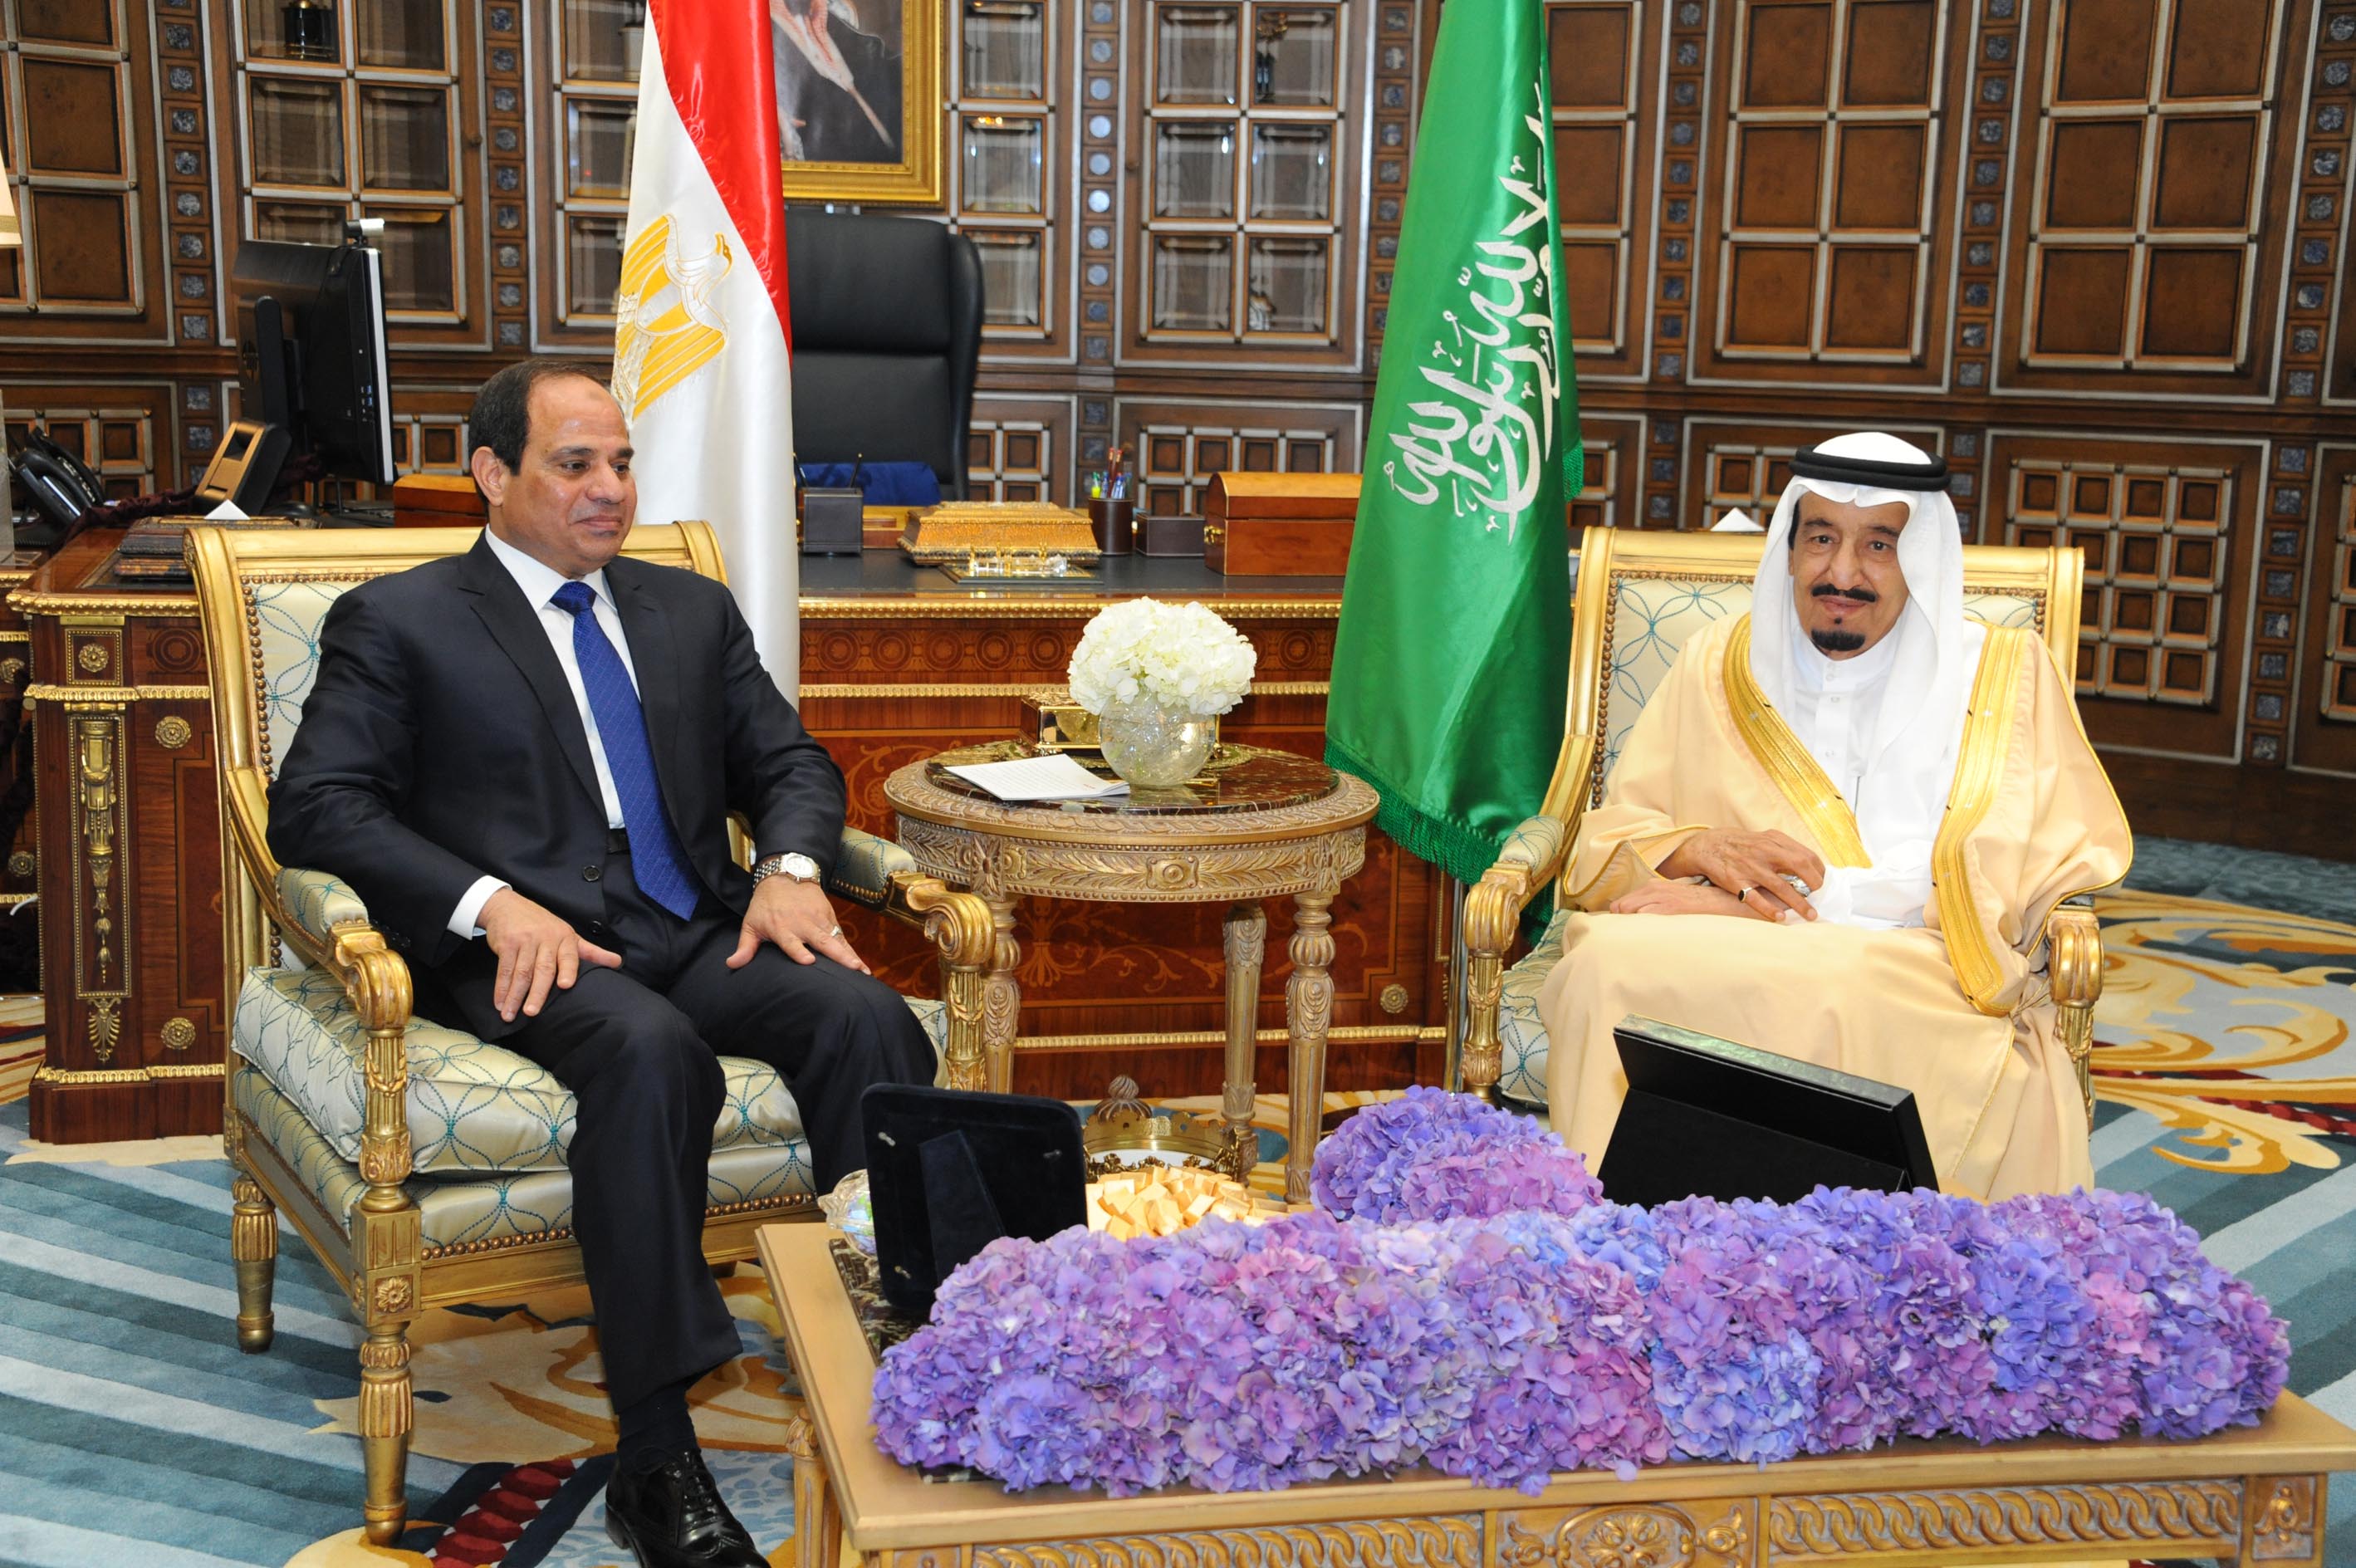 زيارة رئيس مخابرات سوريا القاهرة  تزيد الفجوة بين مصر والسعودية